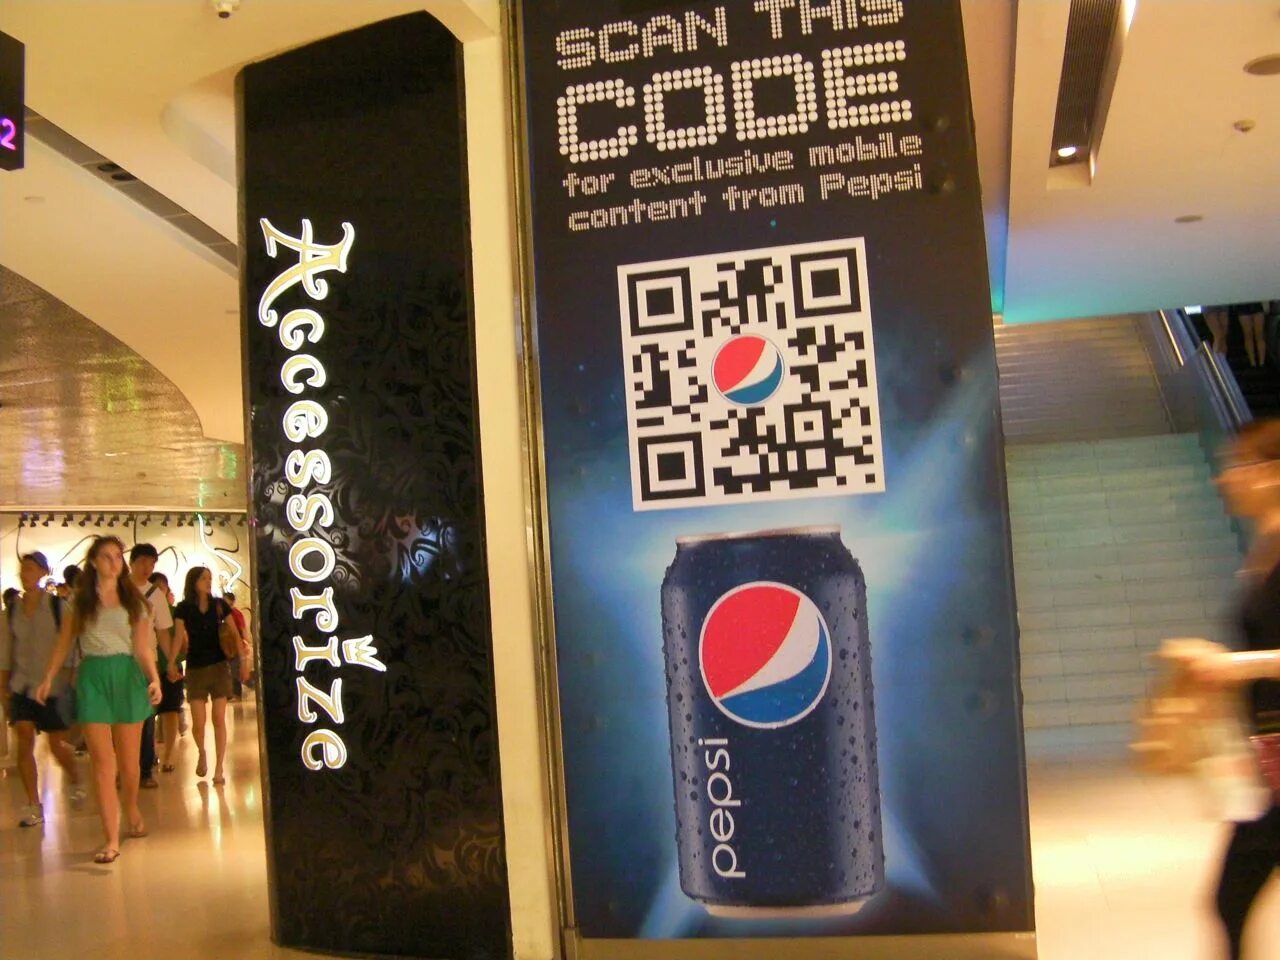 QR код. QR коды в рекламе. Стойки с QR кодом. Рекламный баннер с QR кодом.